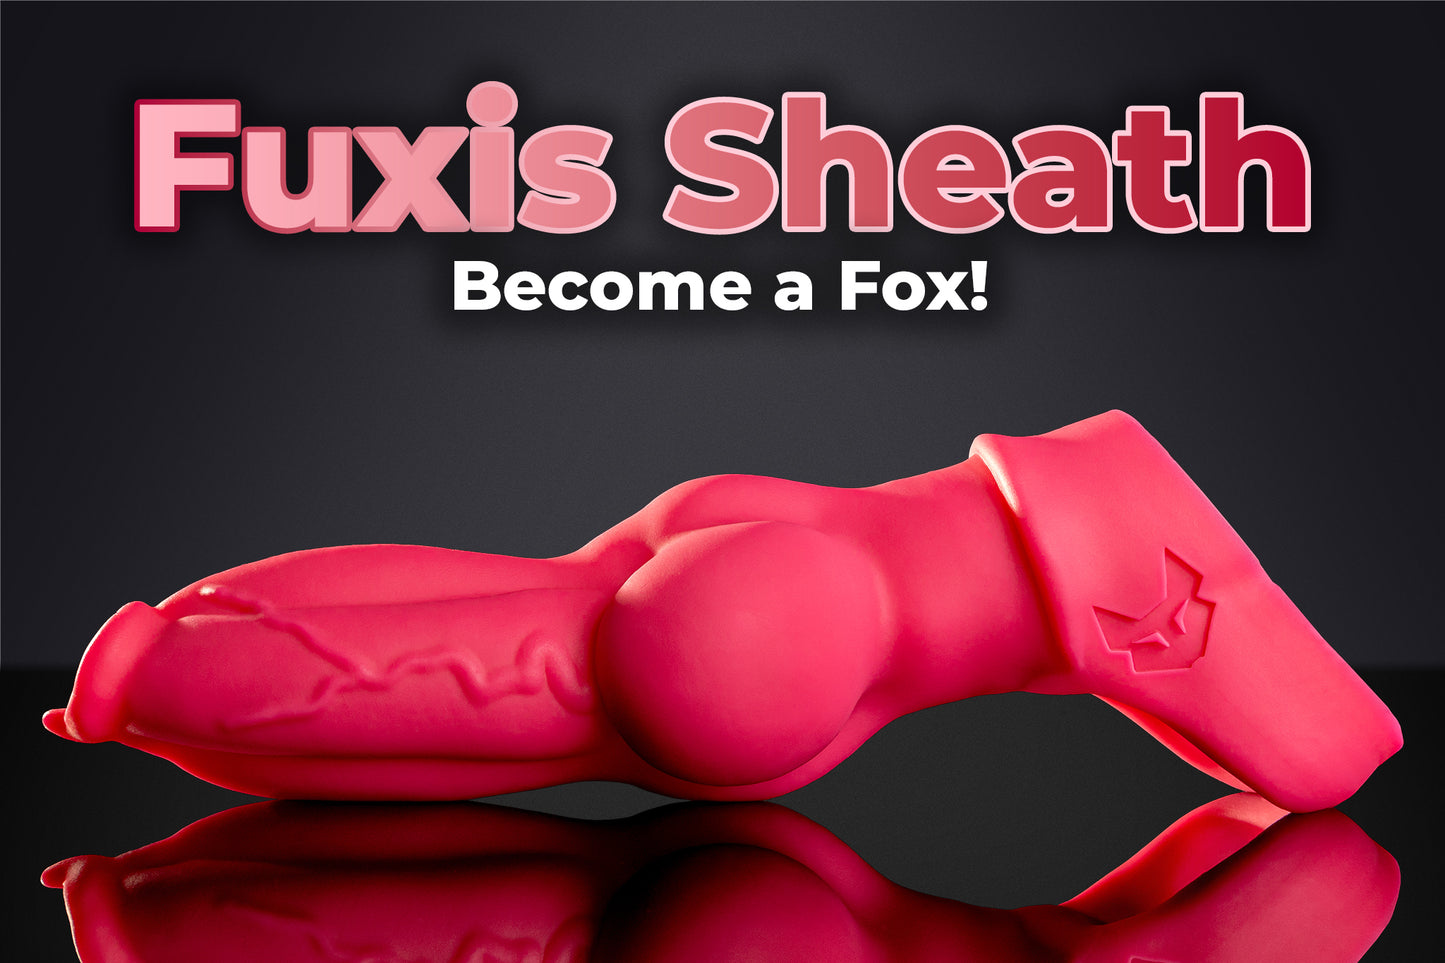 Fuxi's Sheath